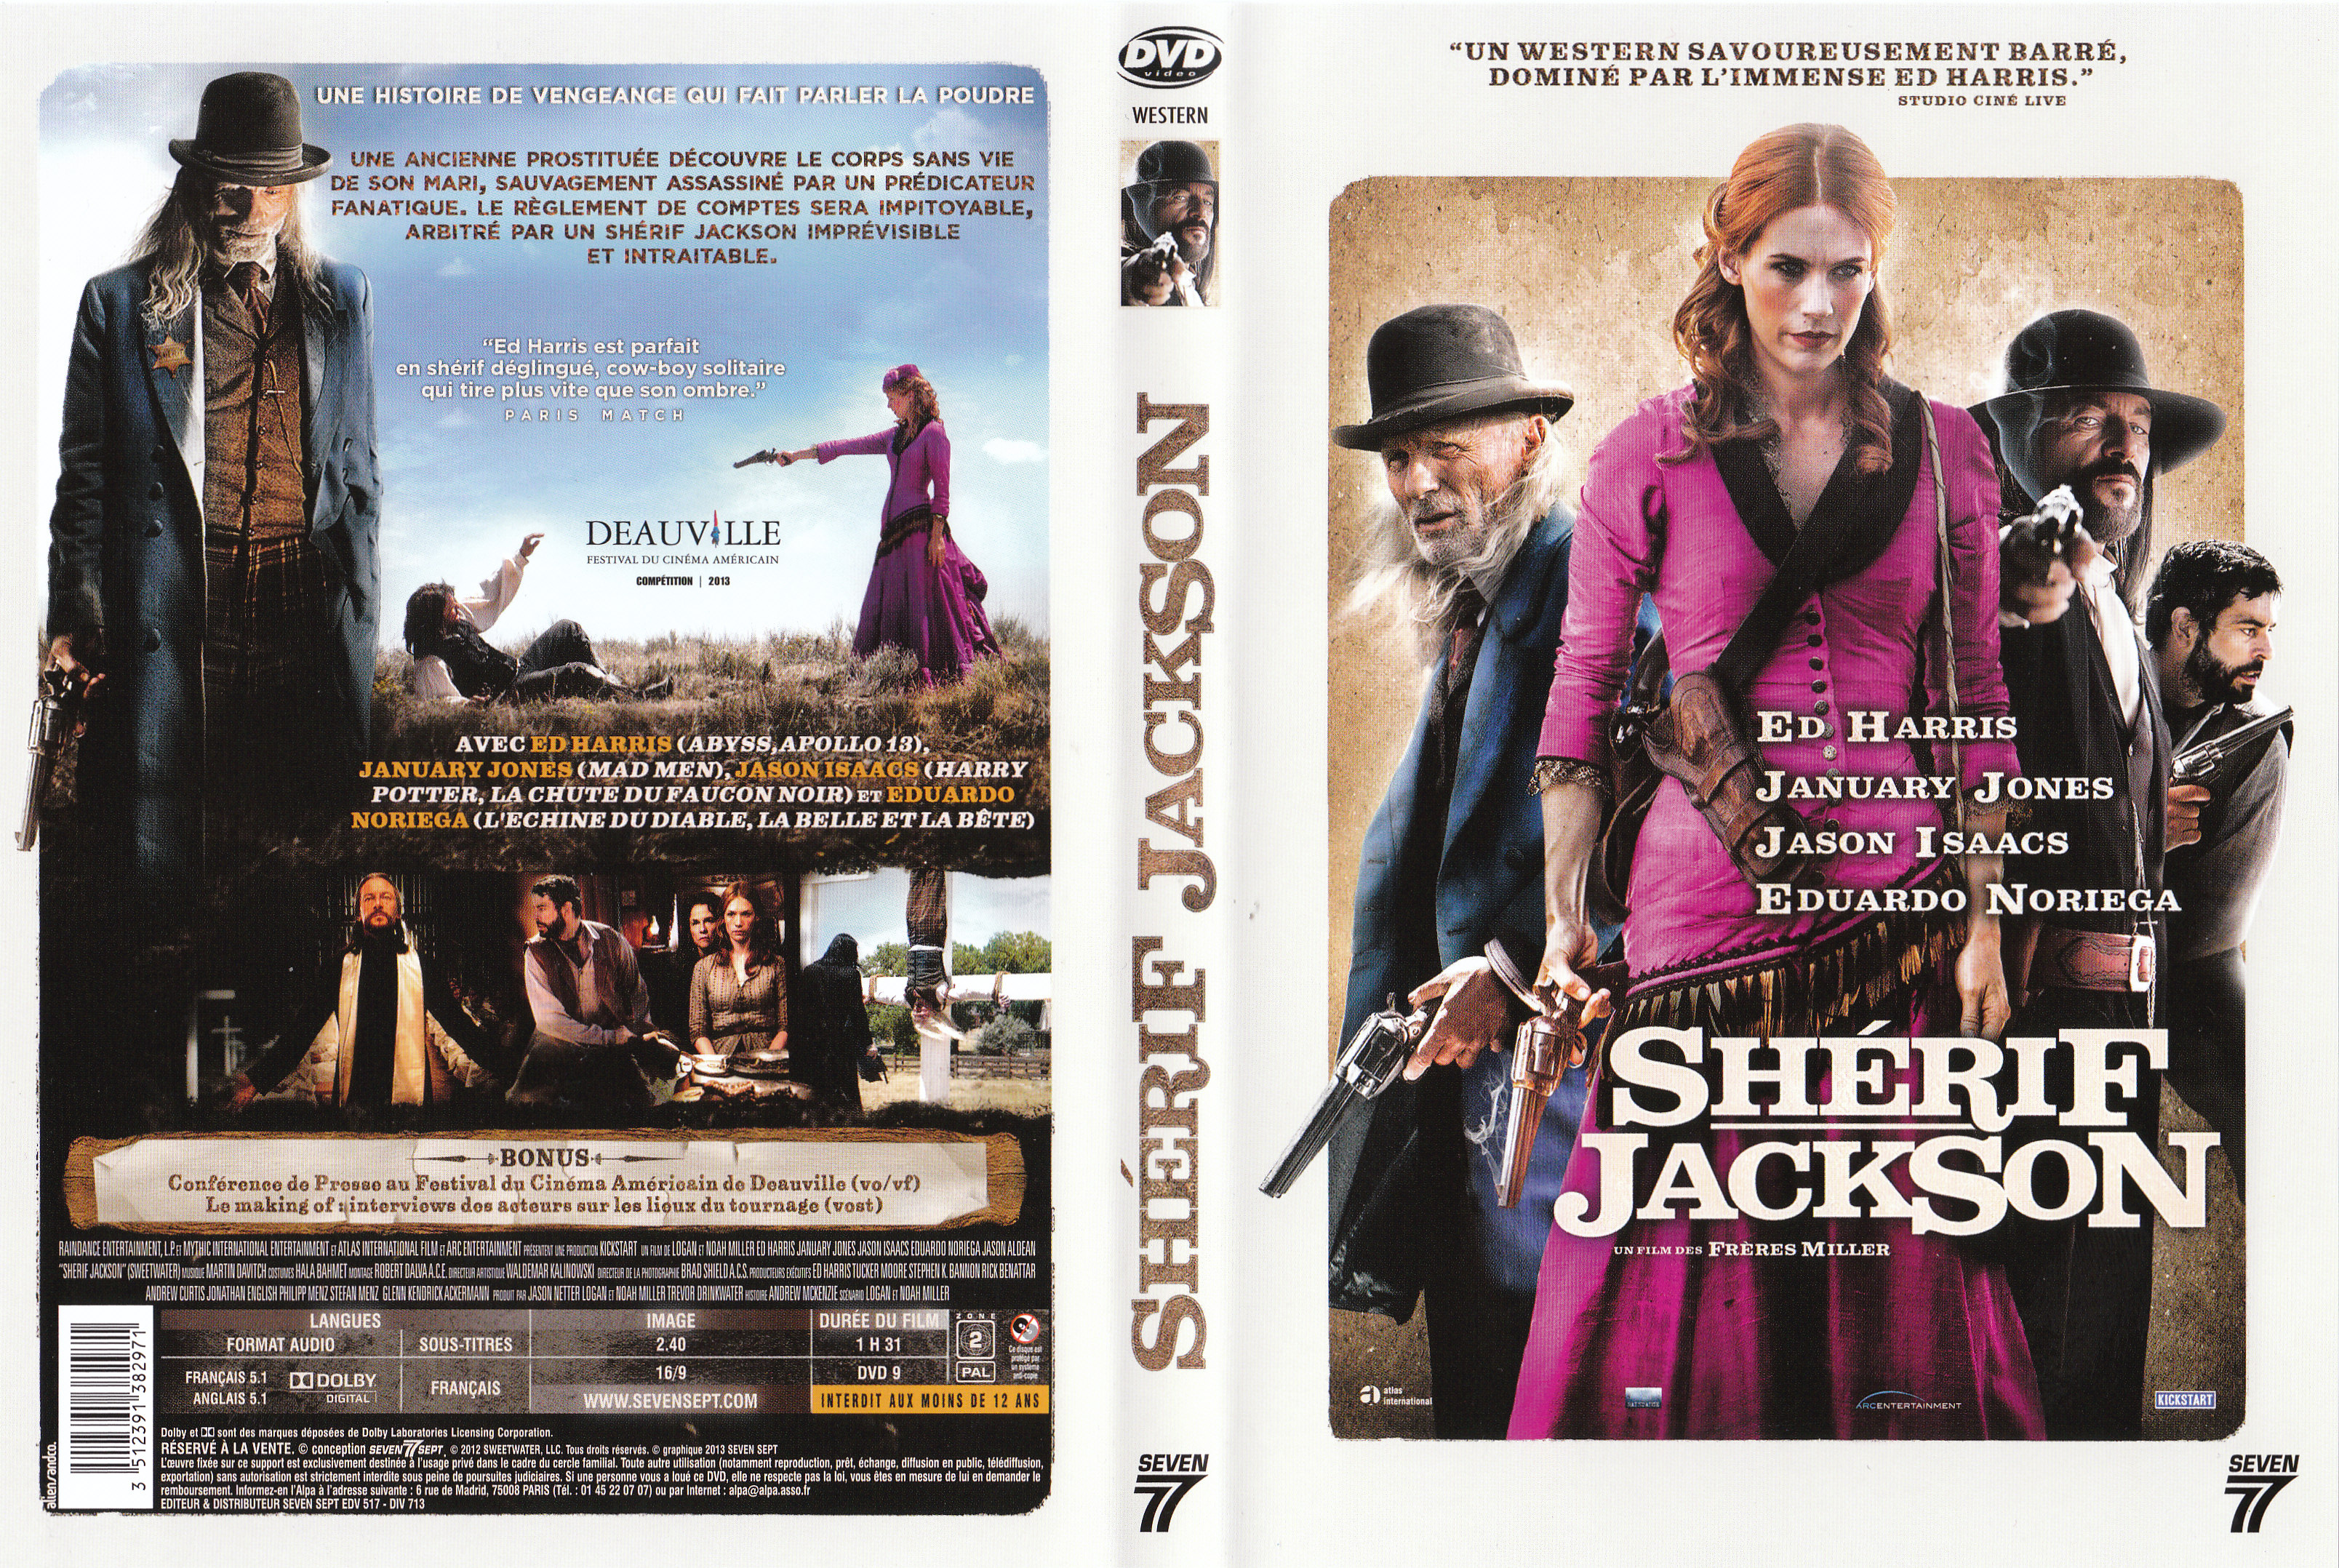 Jaquette DVD Sherif Jackson